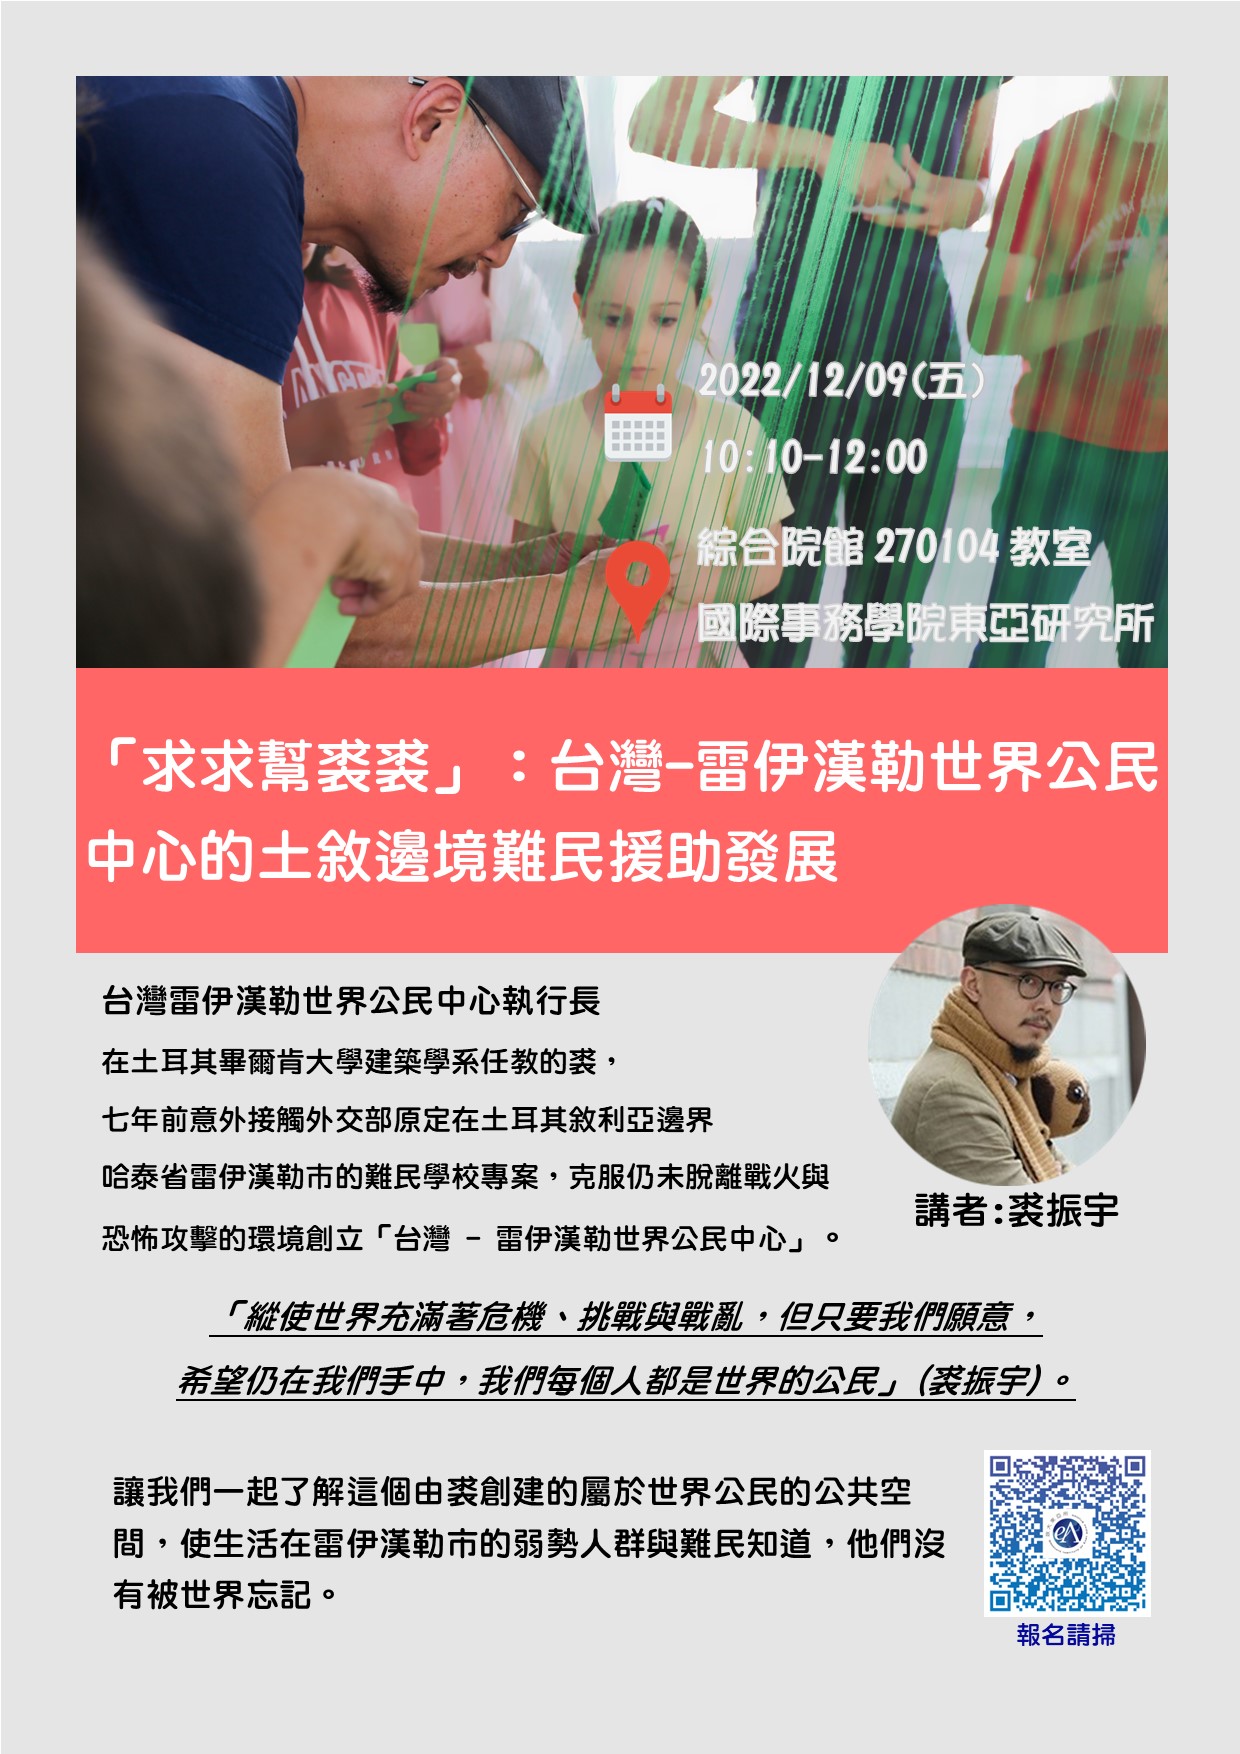 【轉發】東亞所專題演講--求求幫裘裘：台灣-雷伊漢勒世界公民中心的土敘邊境難民援助發